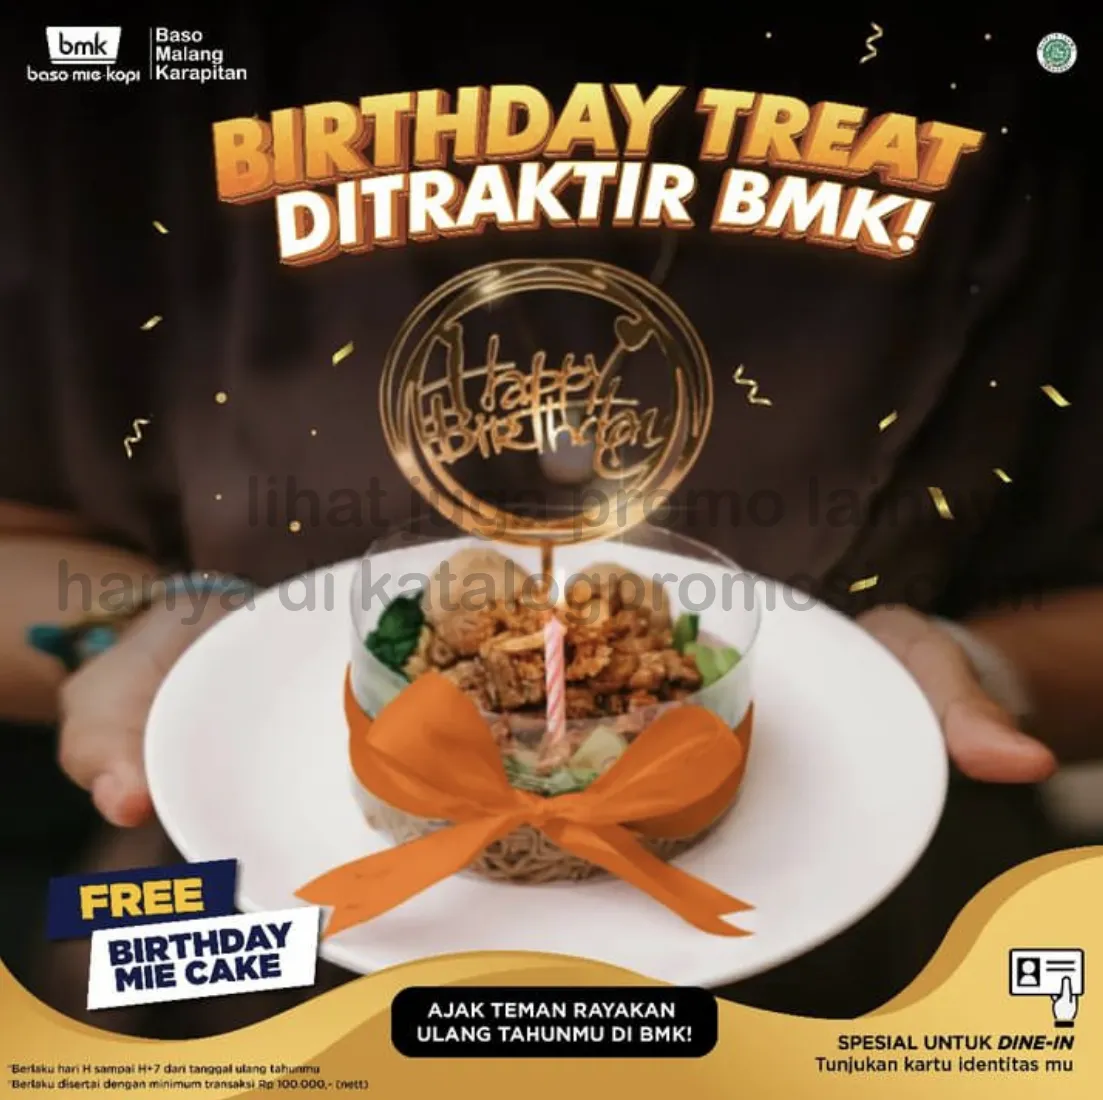 BMK Baso Mie Kopi BIRTHDAY TREAT! FREE BIRTHDAY MIE CAKE